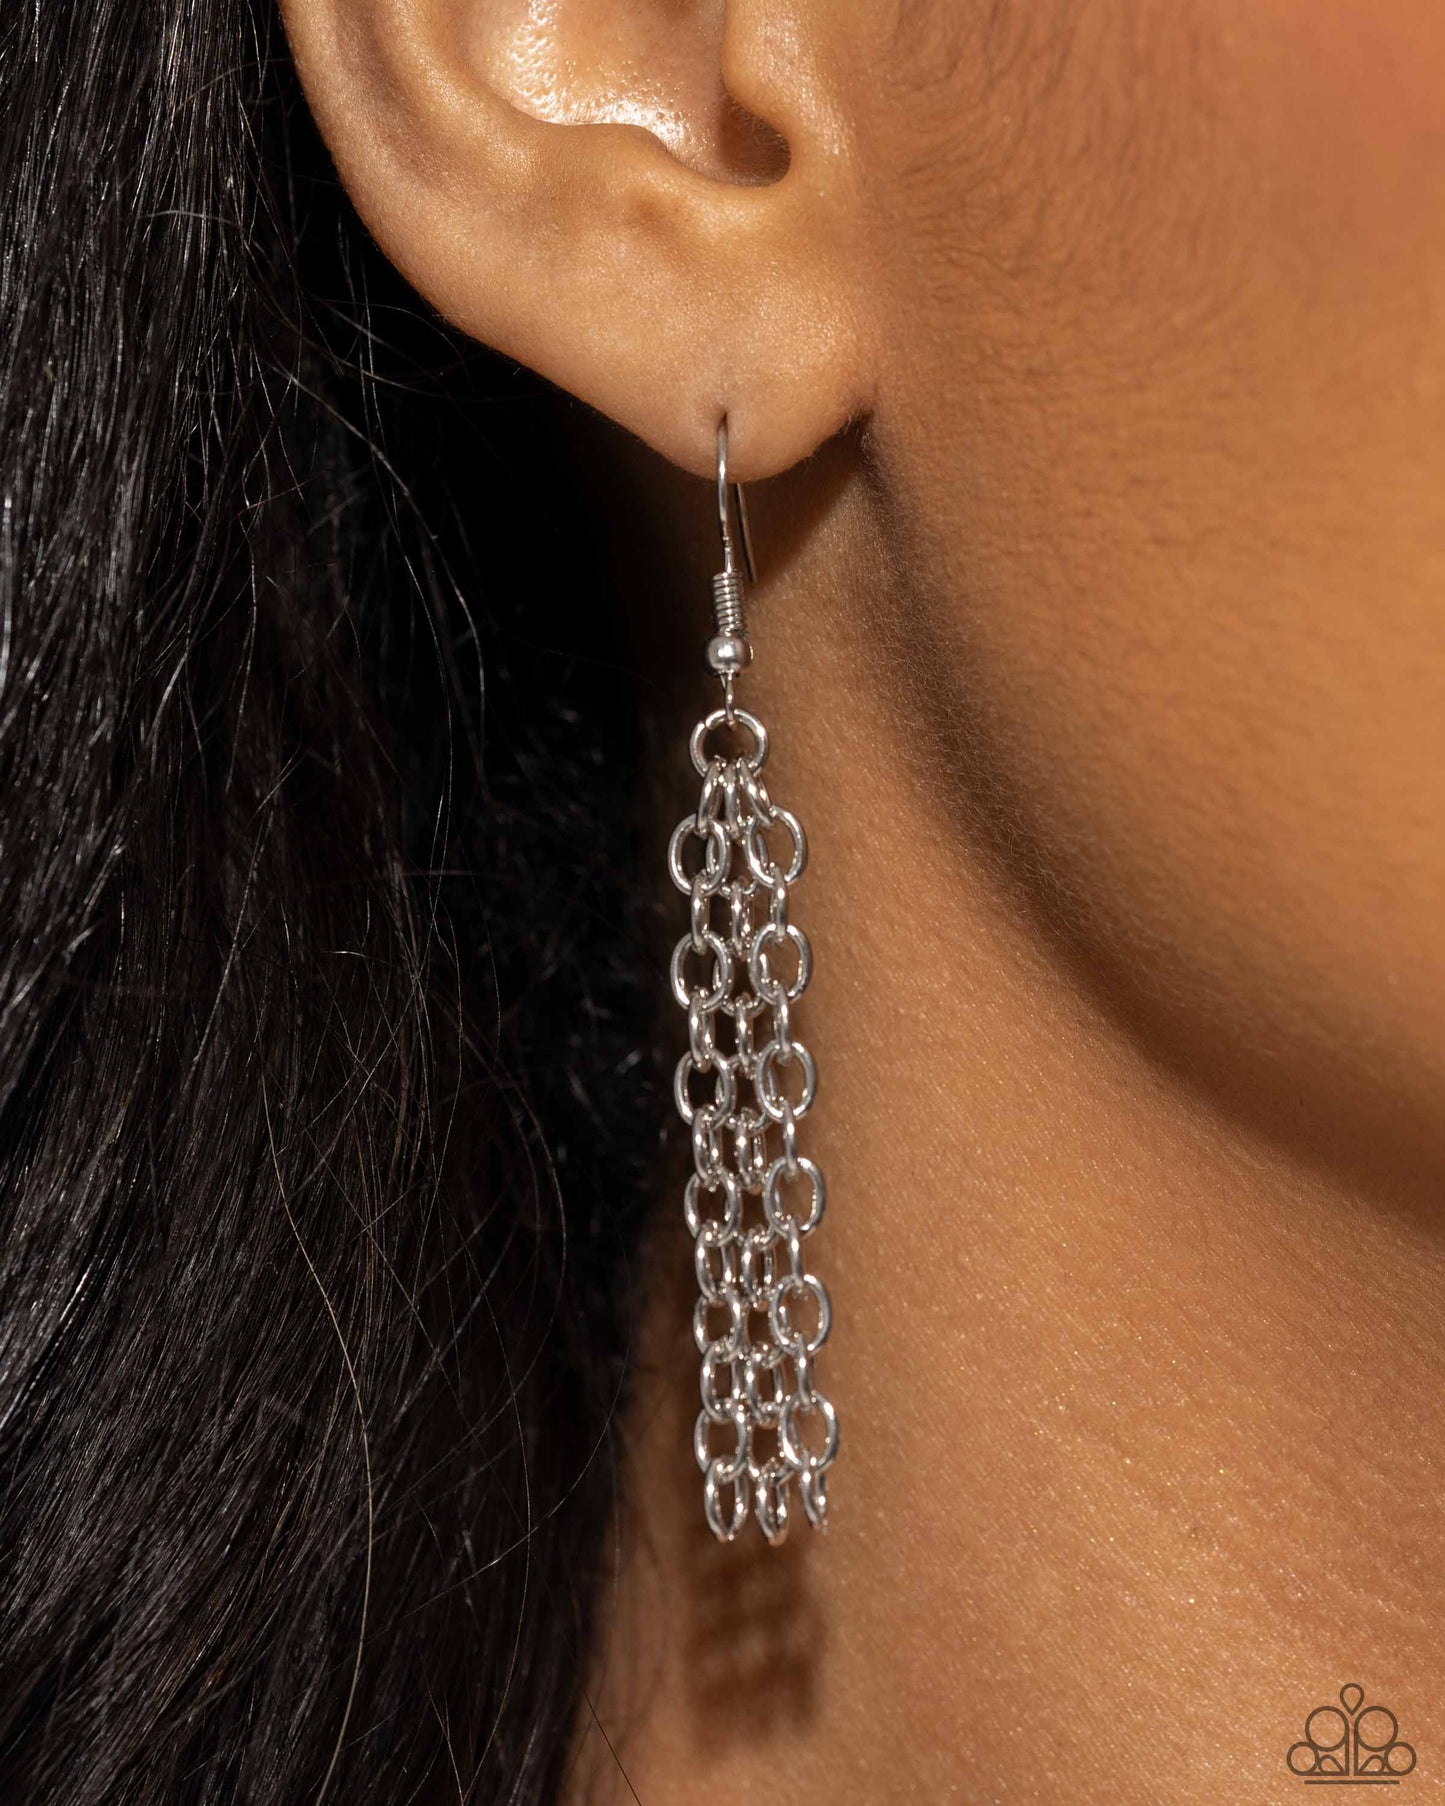 Sparkling Seahorse - Silver necklace &
Seahorse Sheen - Silver earrings